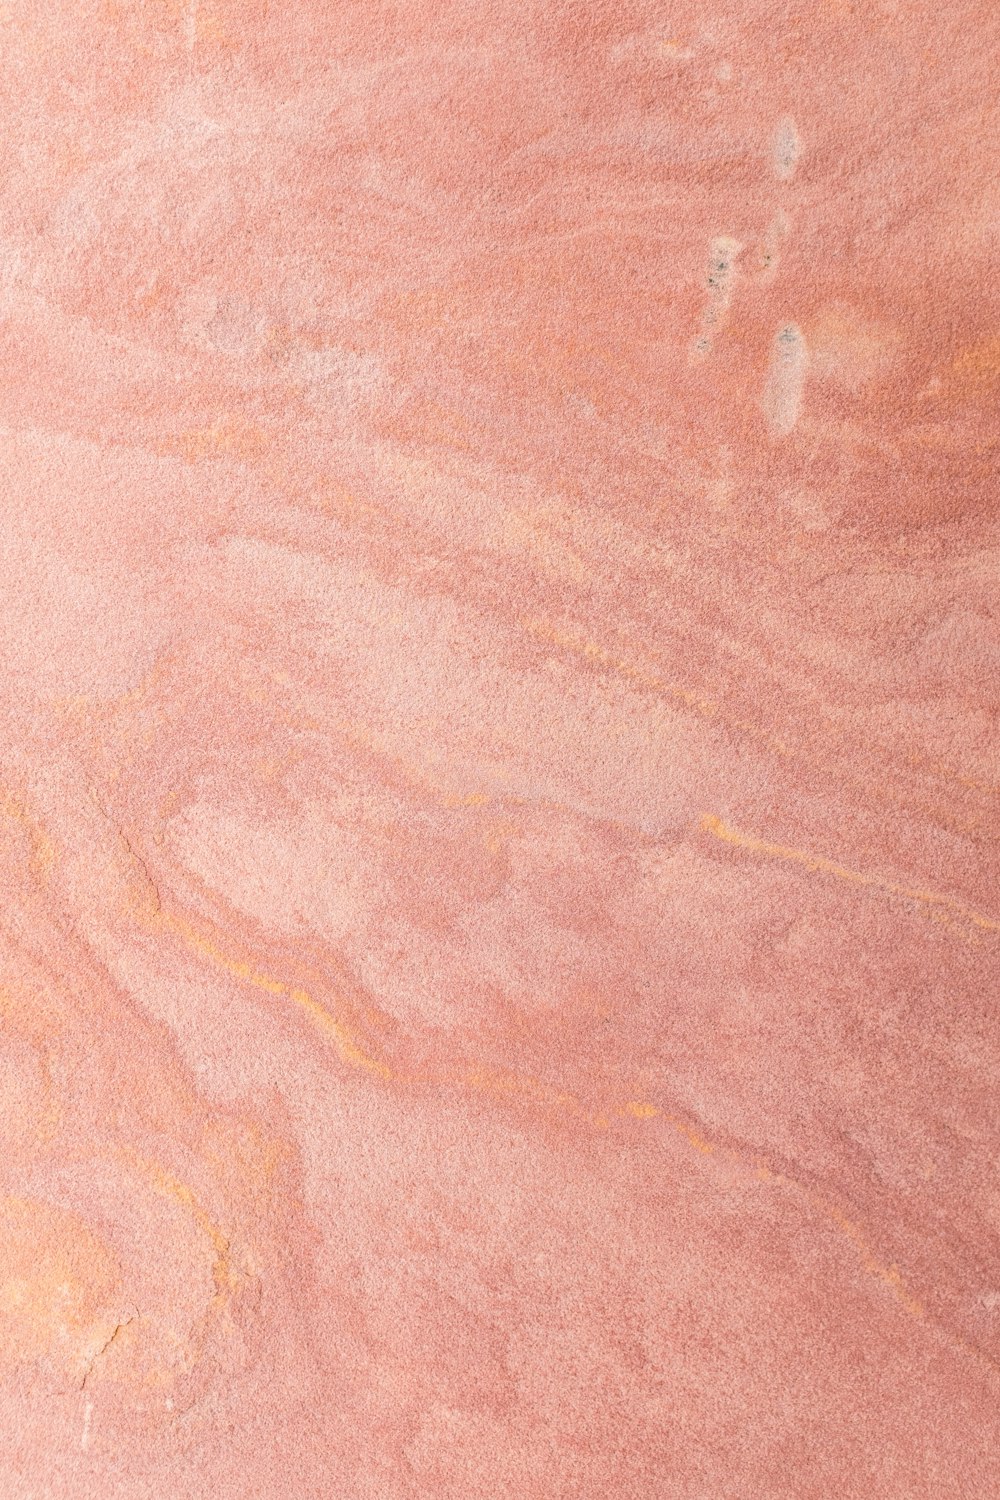 Với hình nền vàng hồng, bạn sẽ ngập tràn trong sự sang trọng và đẳng cấp của một tone màu ấn tượng. Những hoa văn tinh tế sẽ làm nổi bật máy tính của bạn và tạo nên sự trang trí đặc biệt cho không gian làm việc của bạn. Xem ngay để tận hưởng trọn vẹn sự thăng hoa từ hình nền vàng hồng.